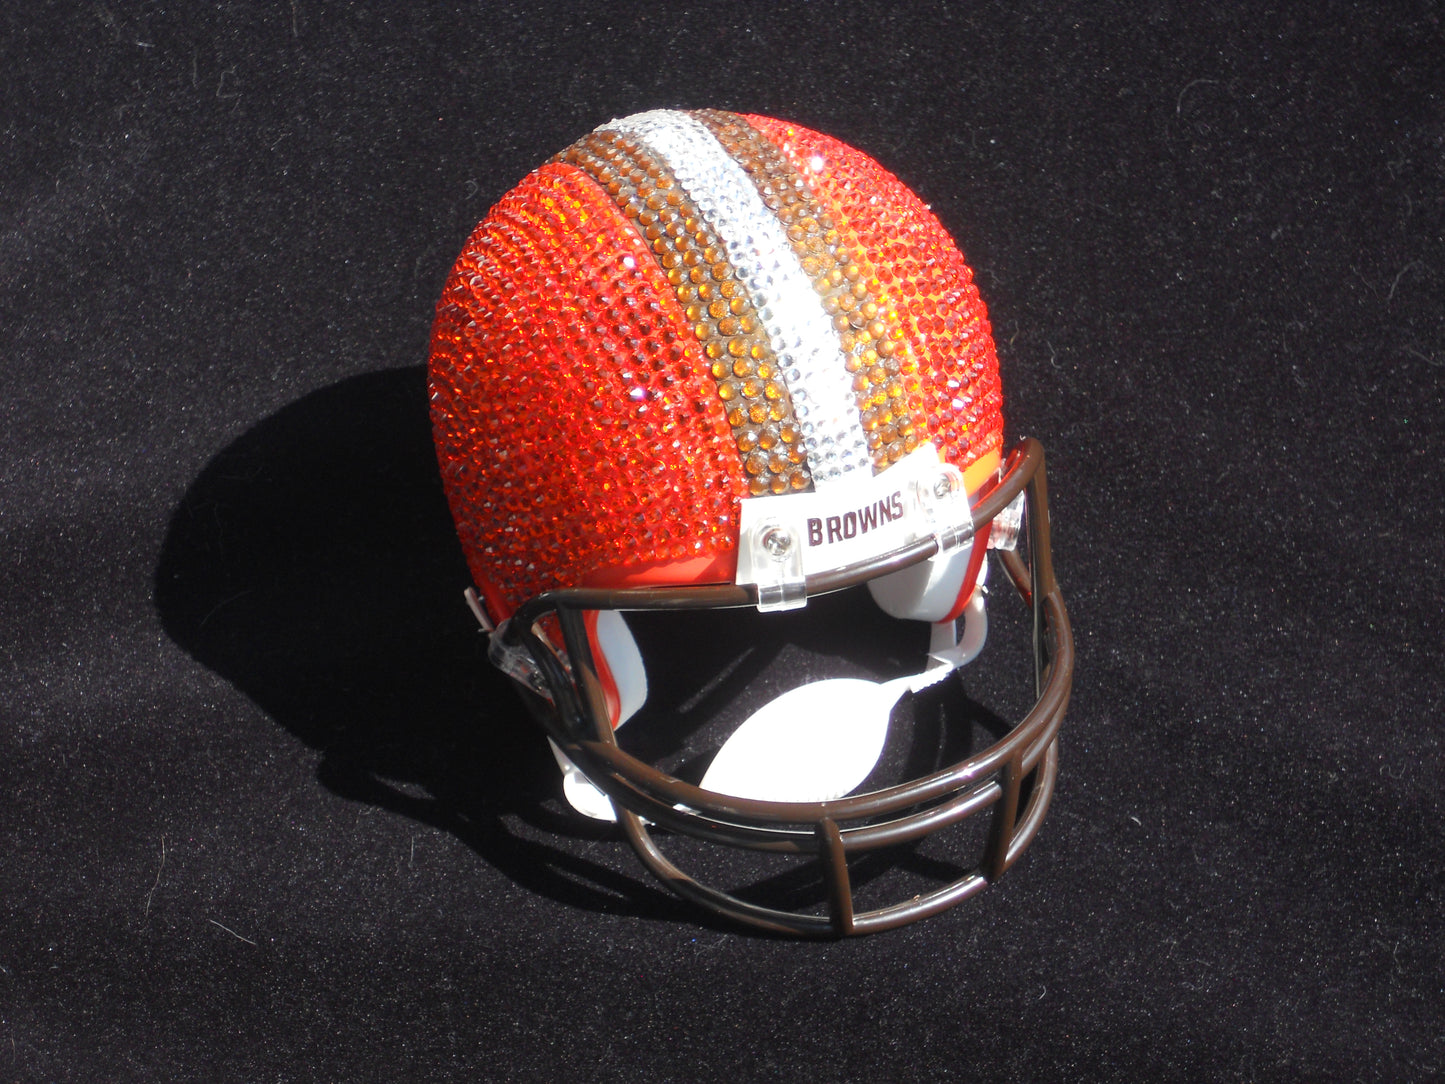 Rhinestone Miniature Football Helmets